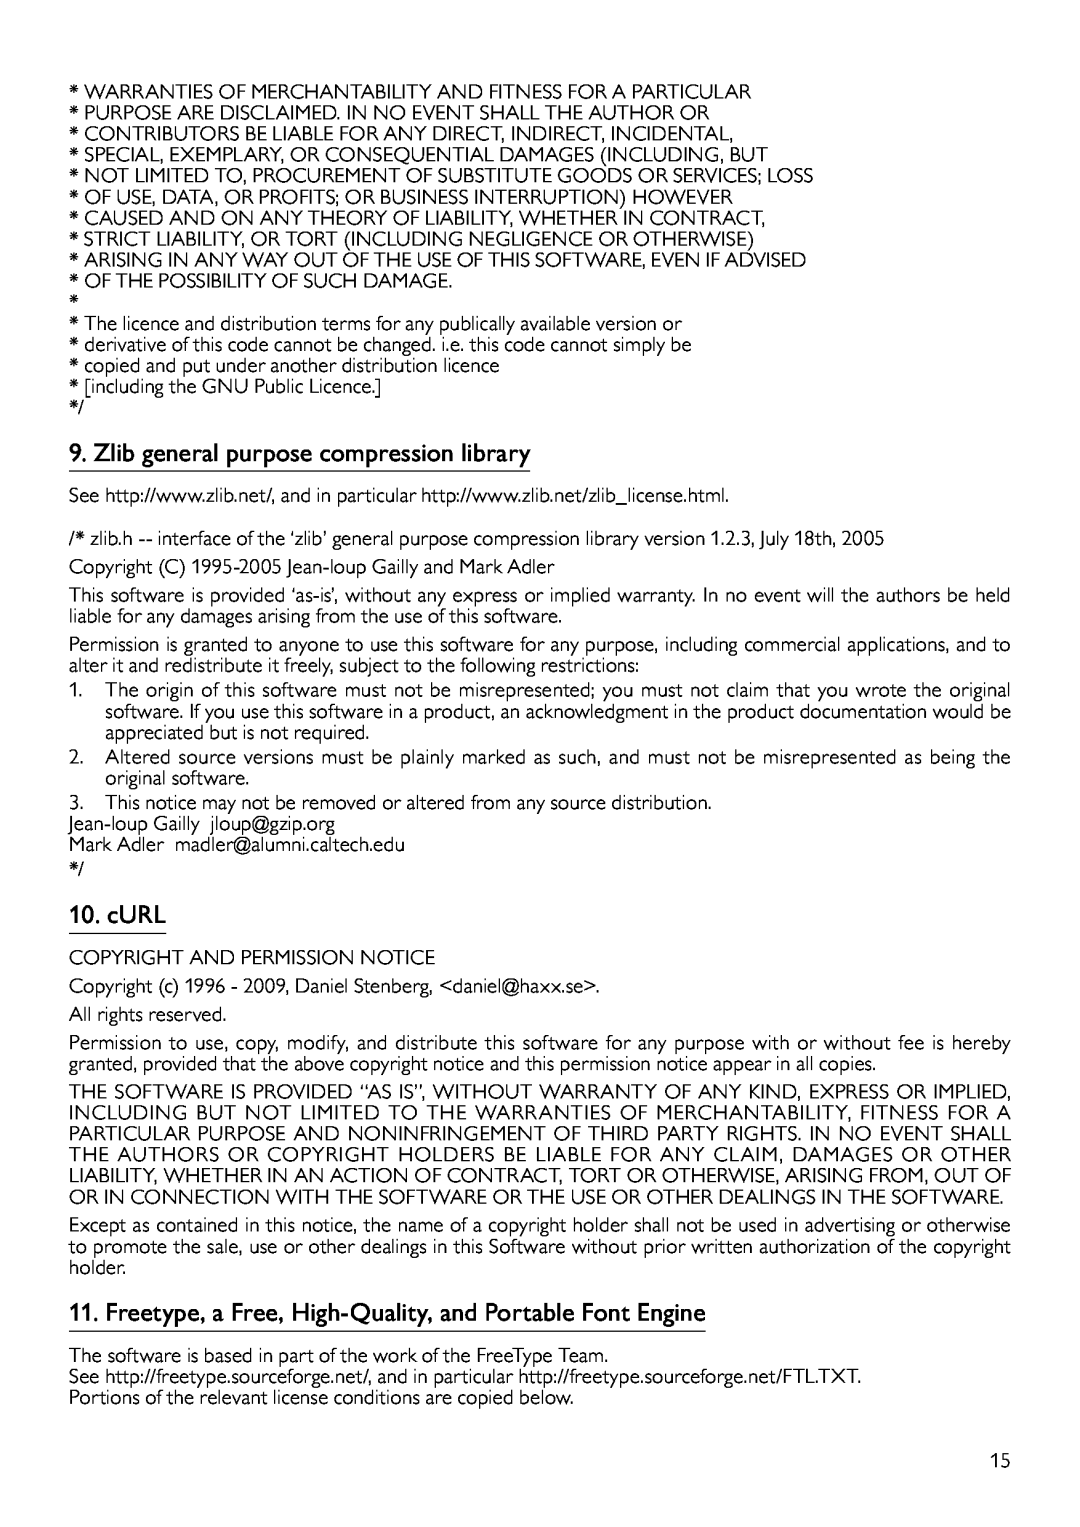 Philips BDP9600 manual Zlib general purpose compression library, cURL 